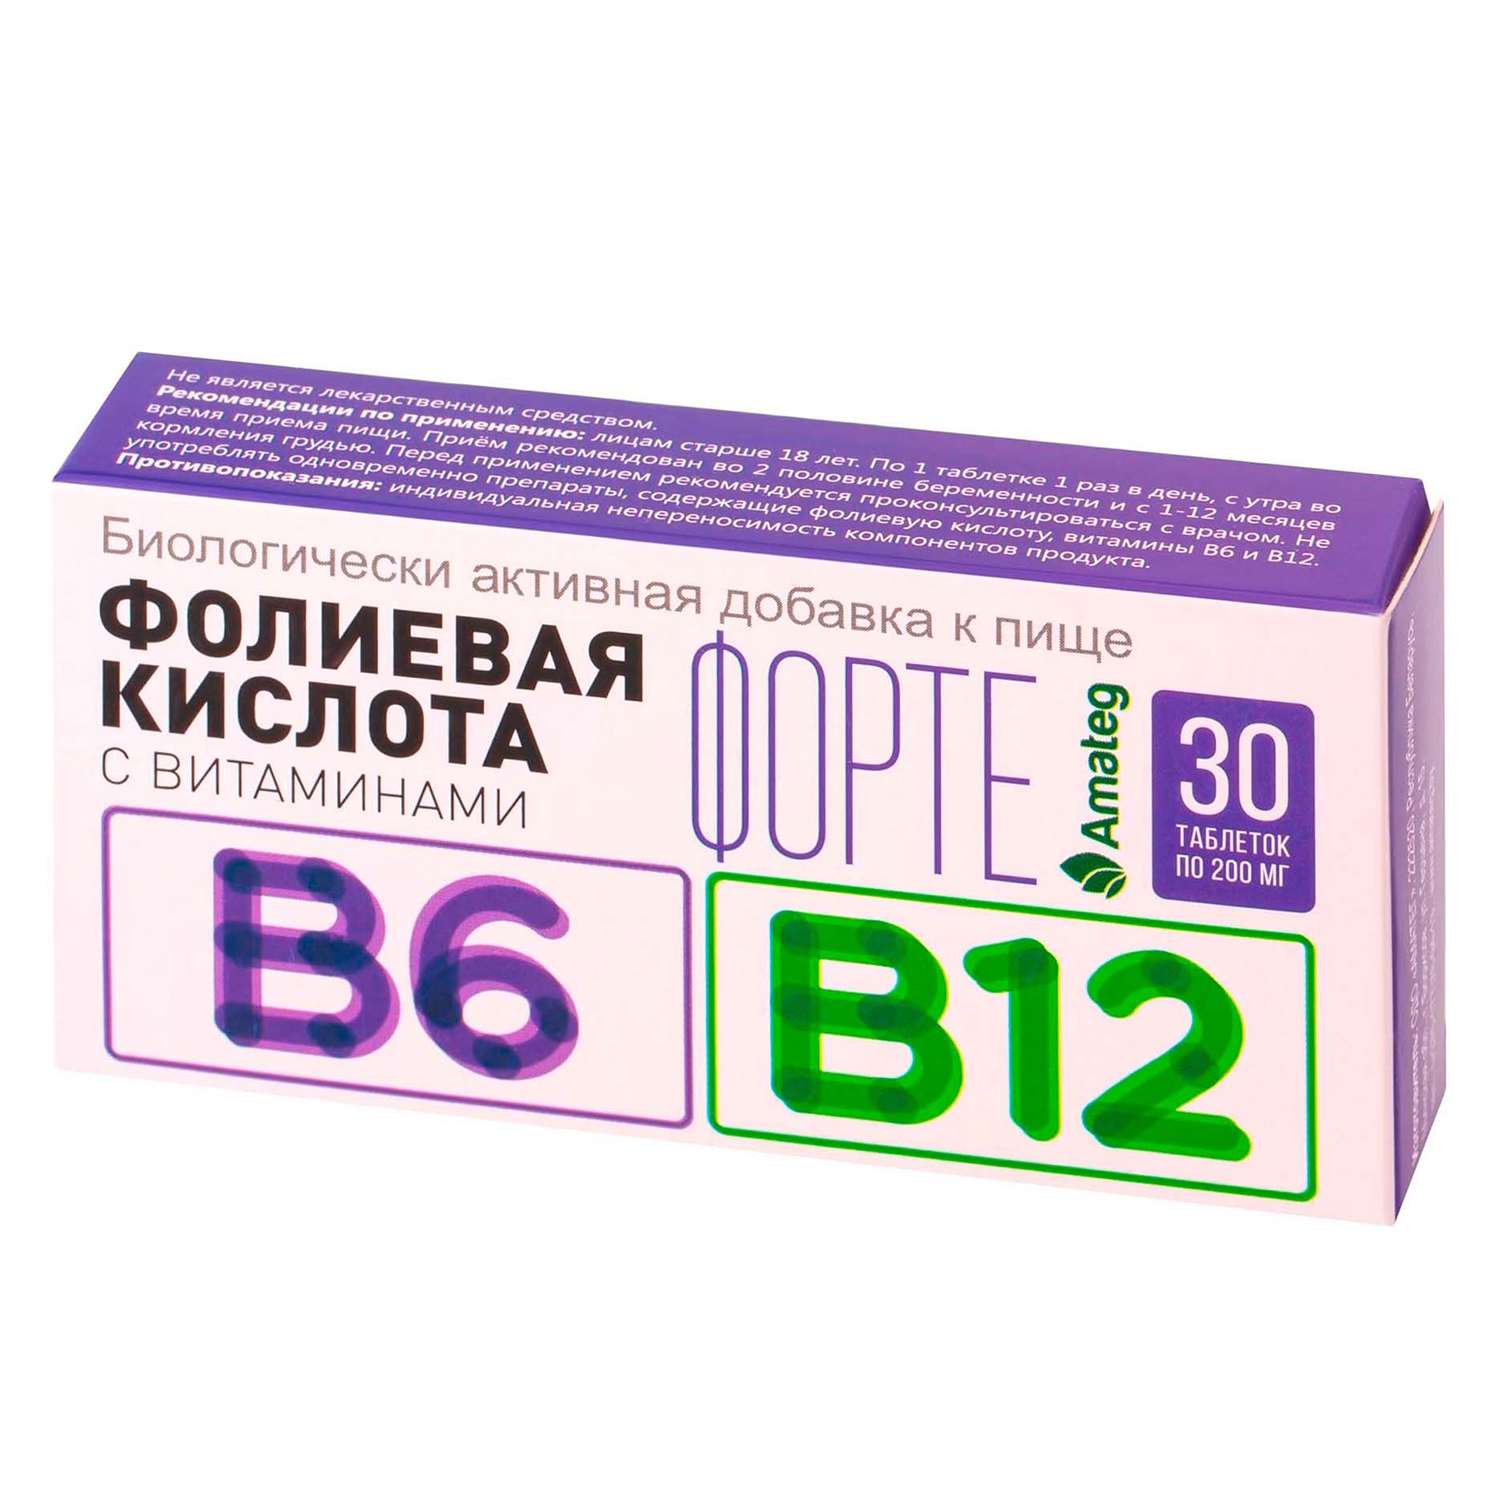 Биологически активная добавка Amateg Кислота фолиевая 200мг с витаминами B6 В12 30таблеток - фото 1